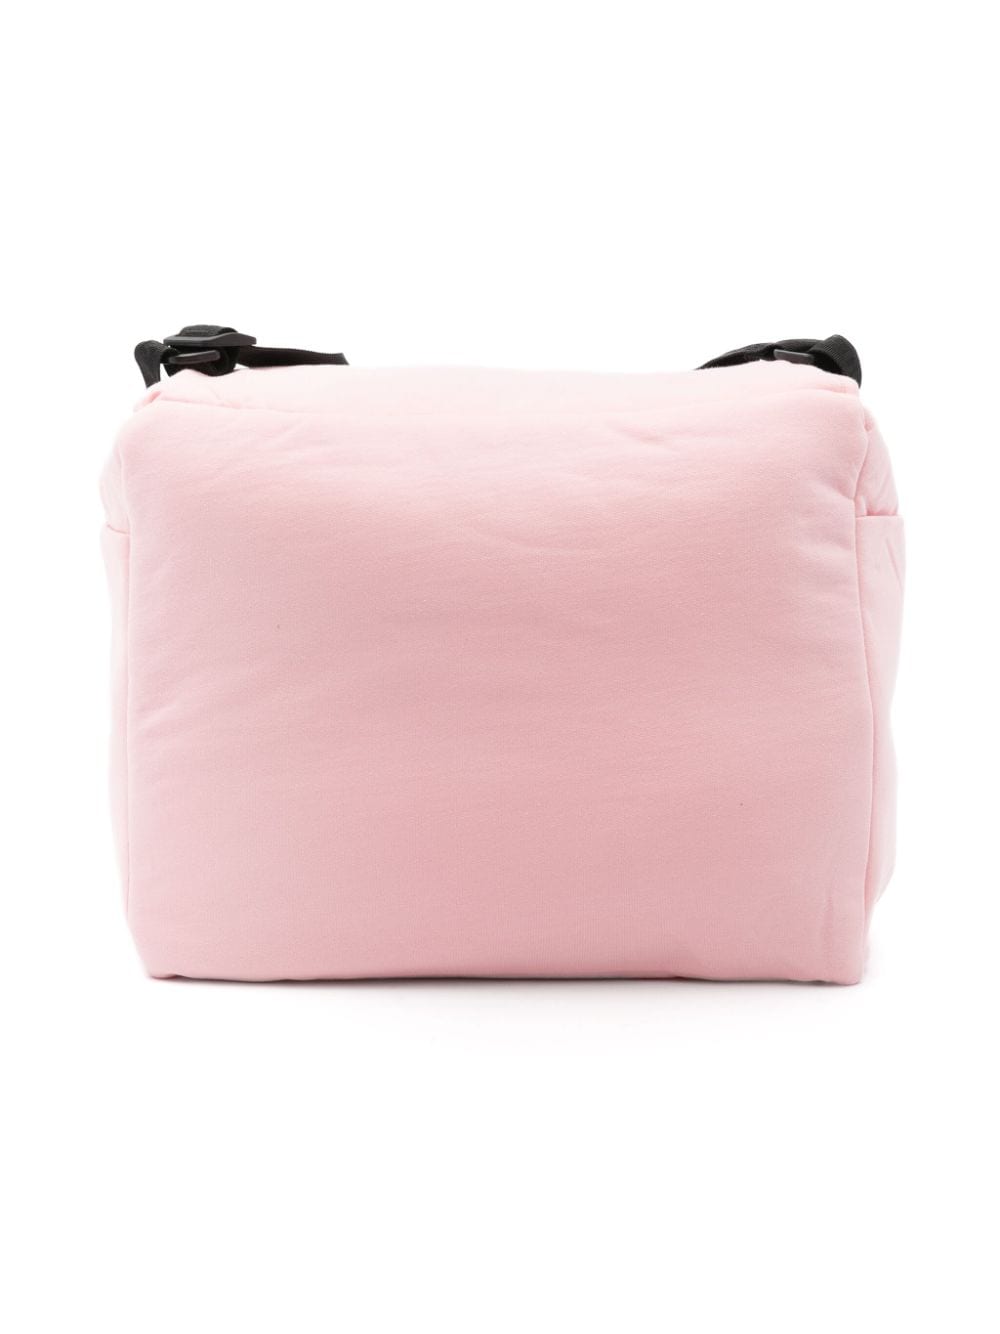 Borsa mamma per neonata in cotone rosa chiaro